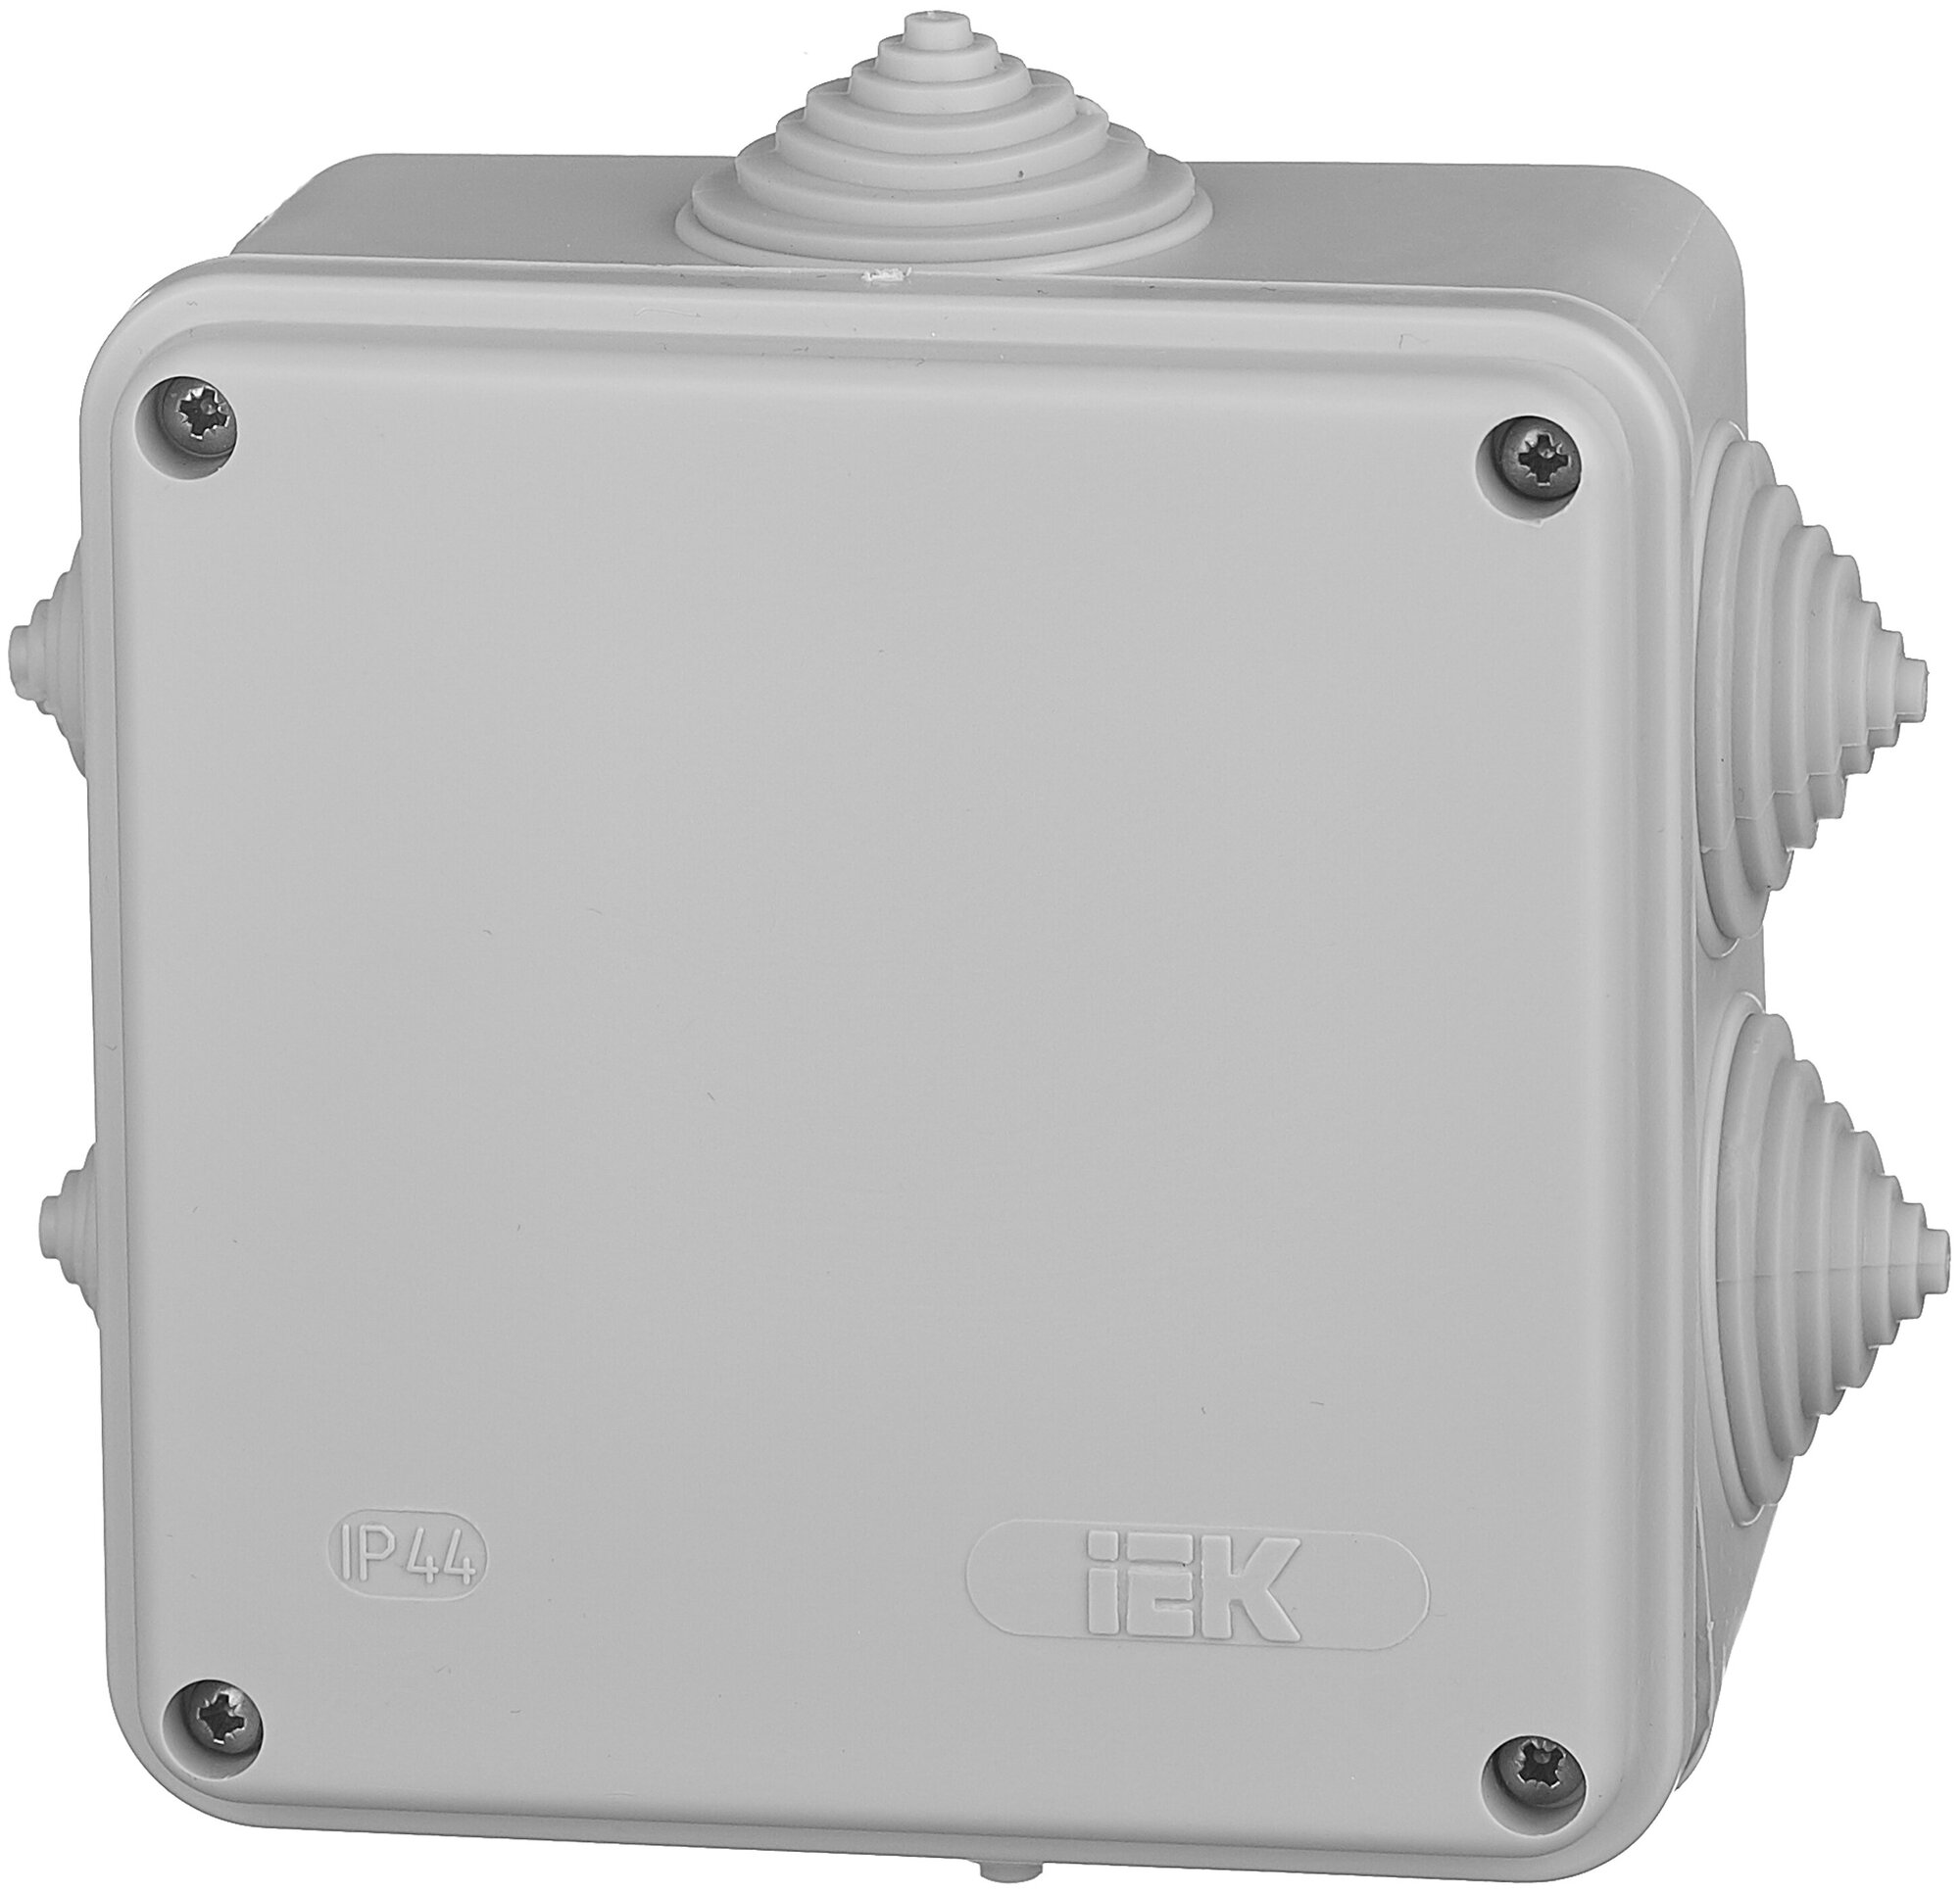 Распределительная коробка IEK KM41233 наружный монтаж 100x100 мм